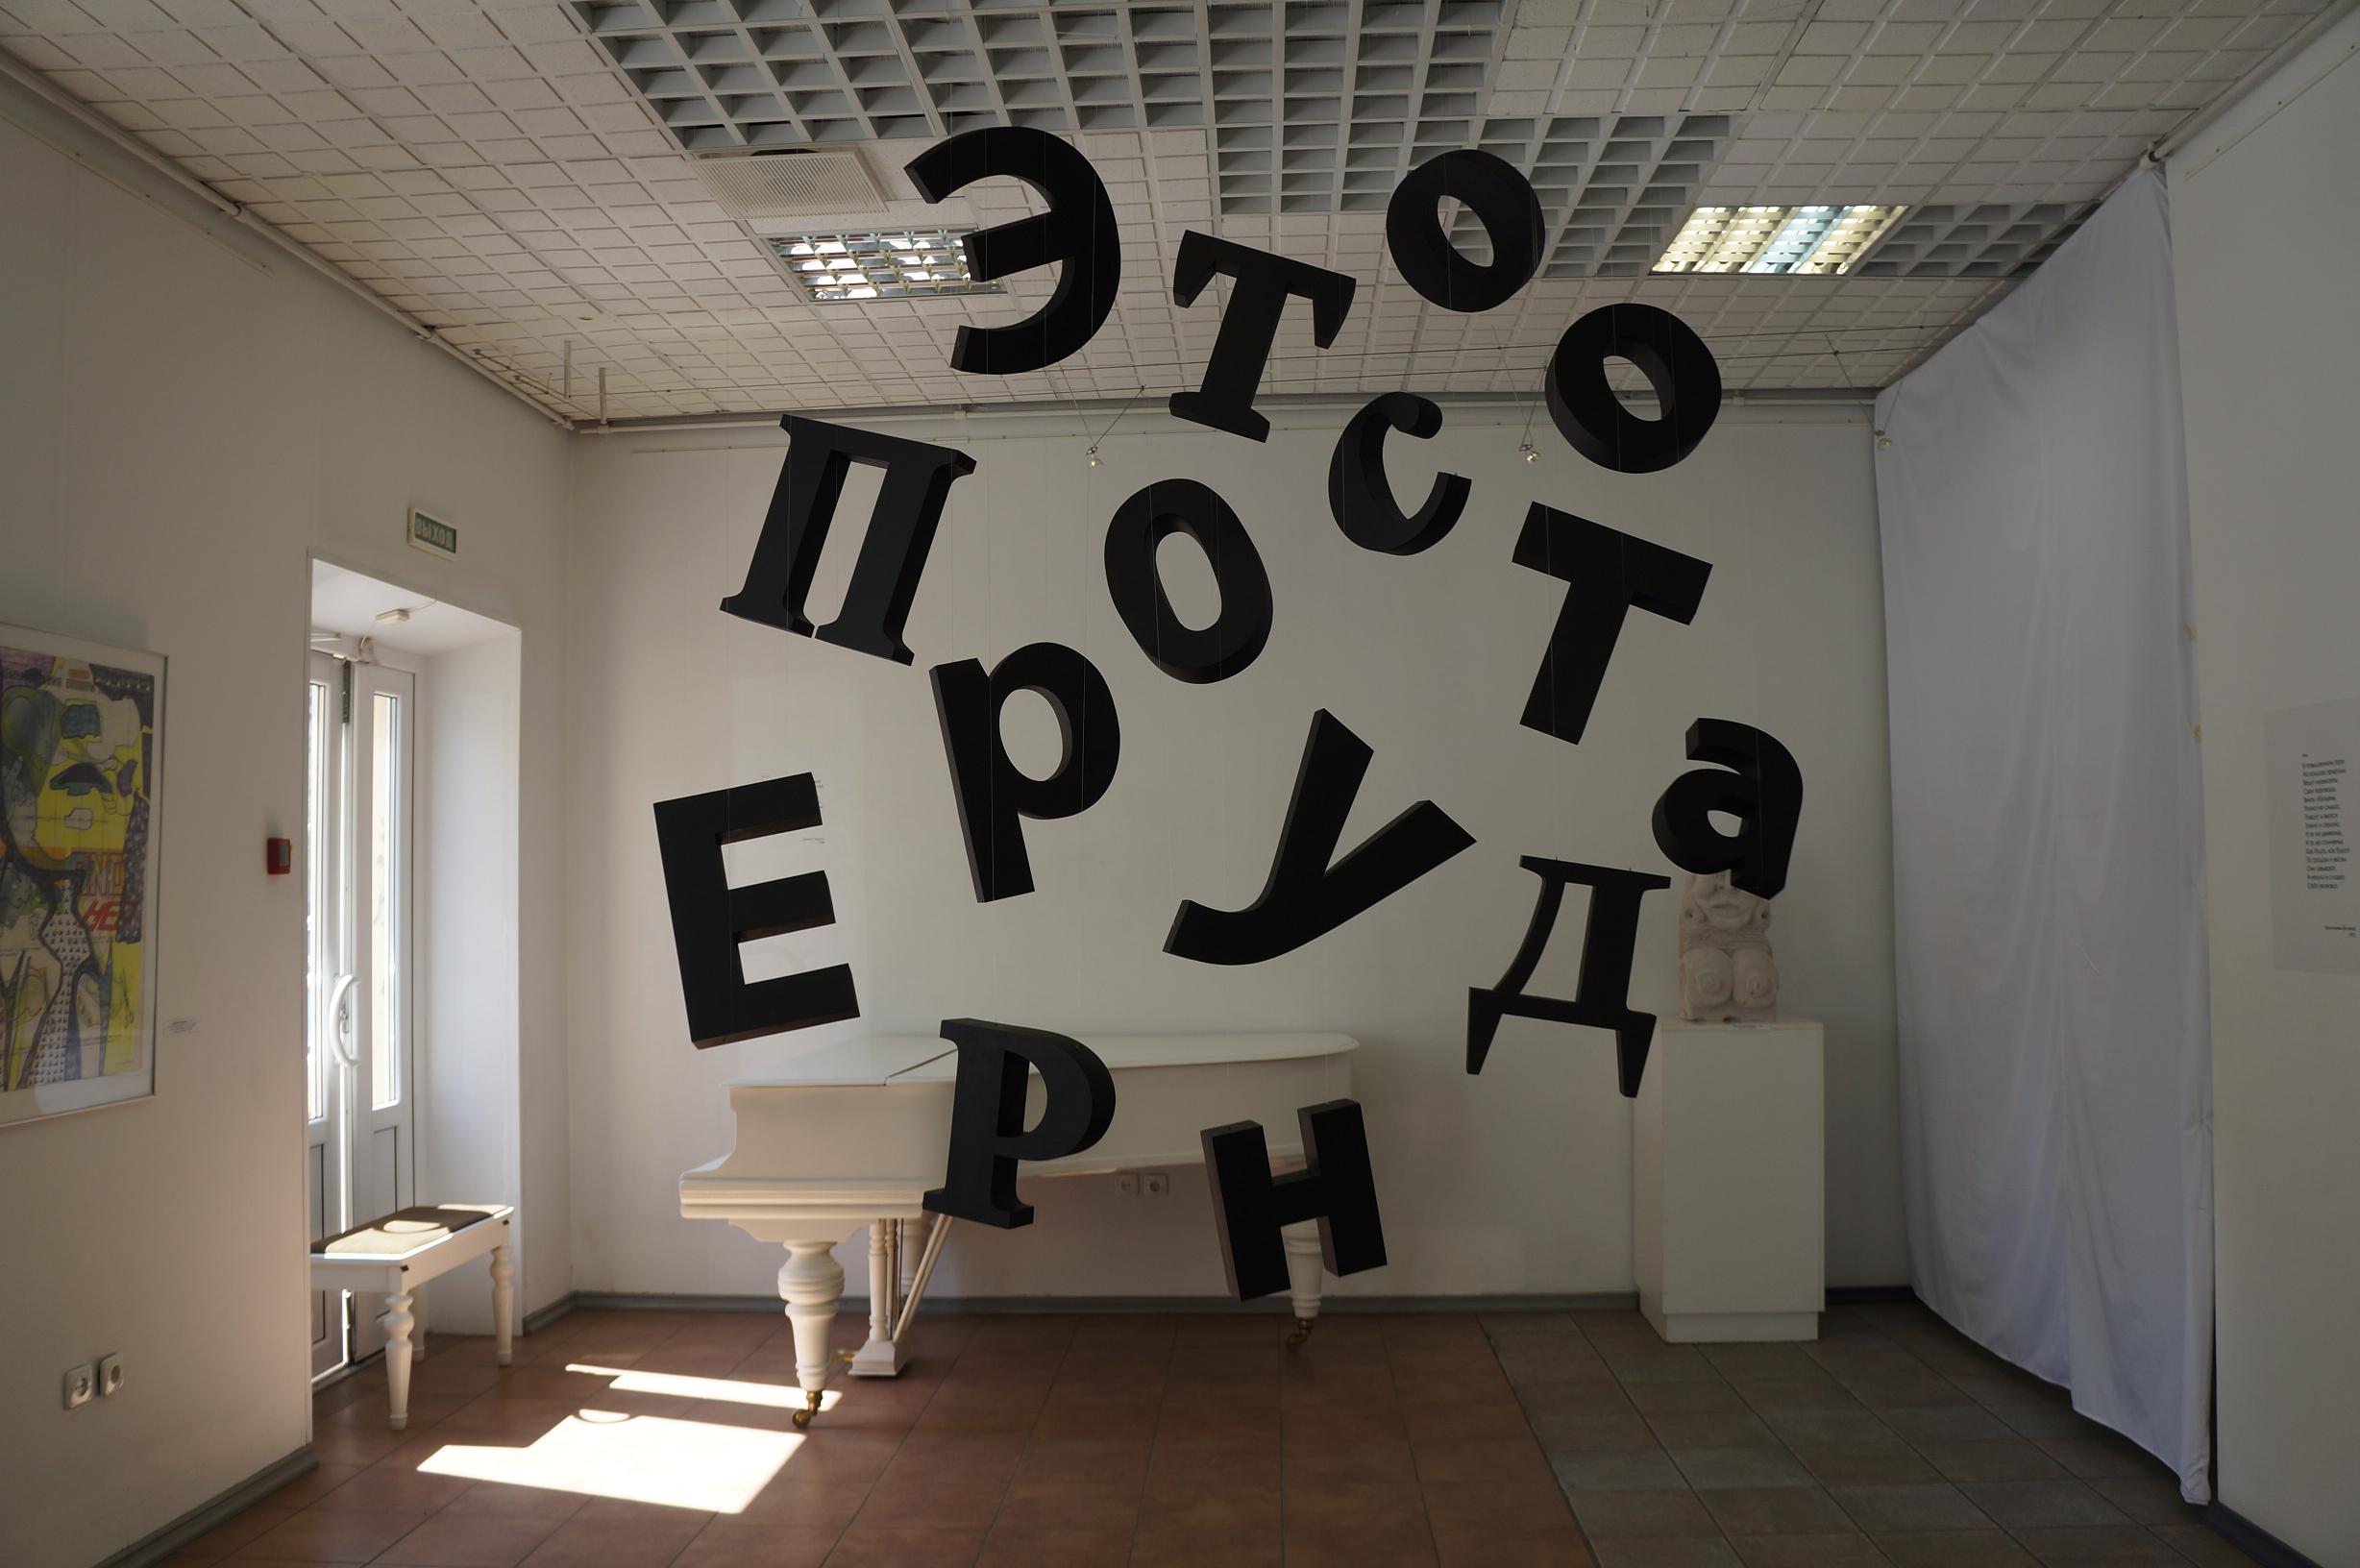 Выставка «Посвящение обэриутам» в Петрозаводске